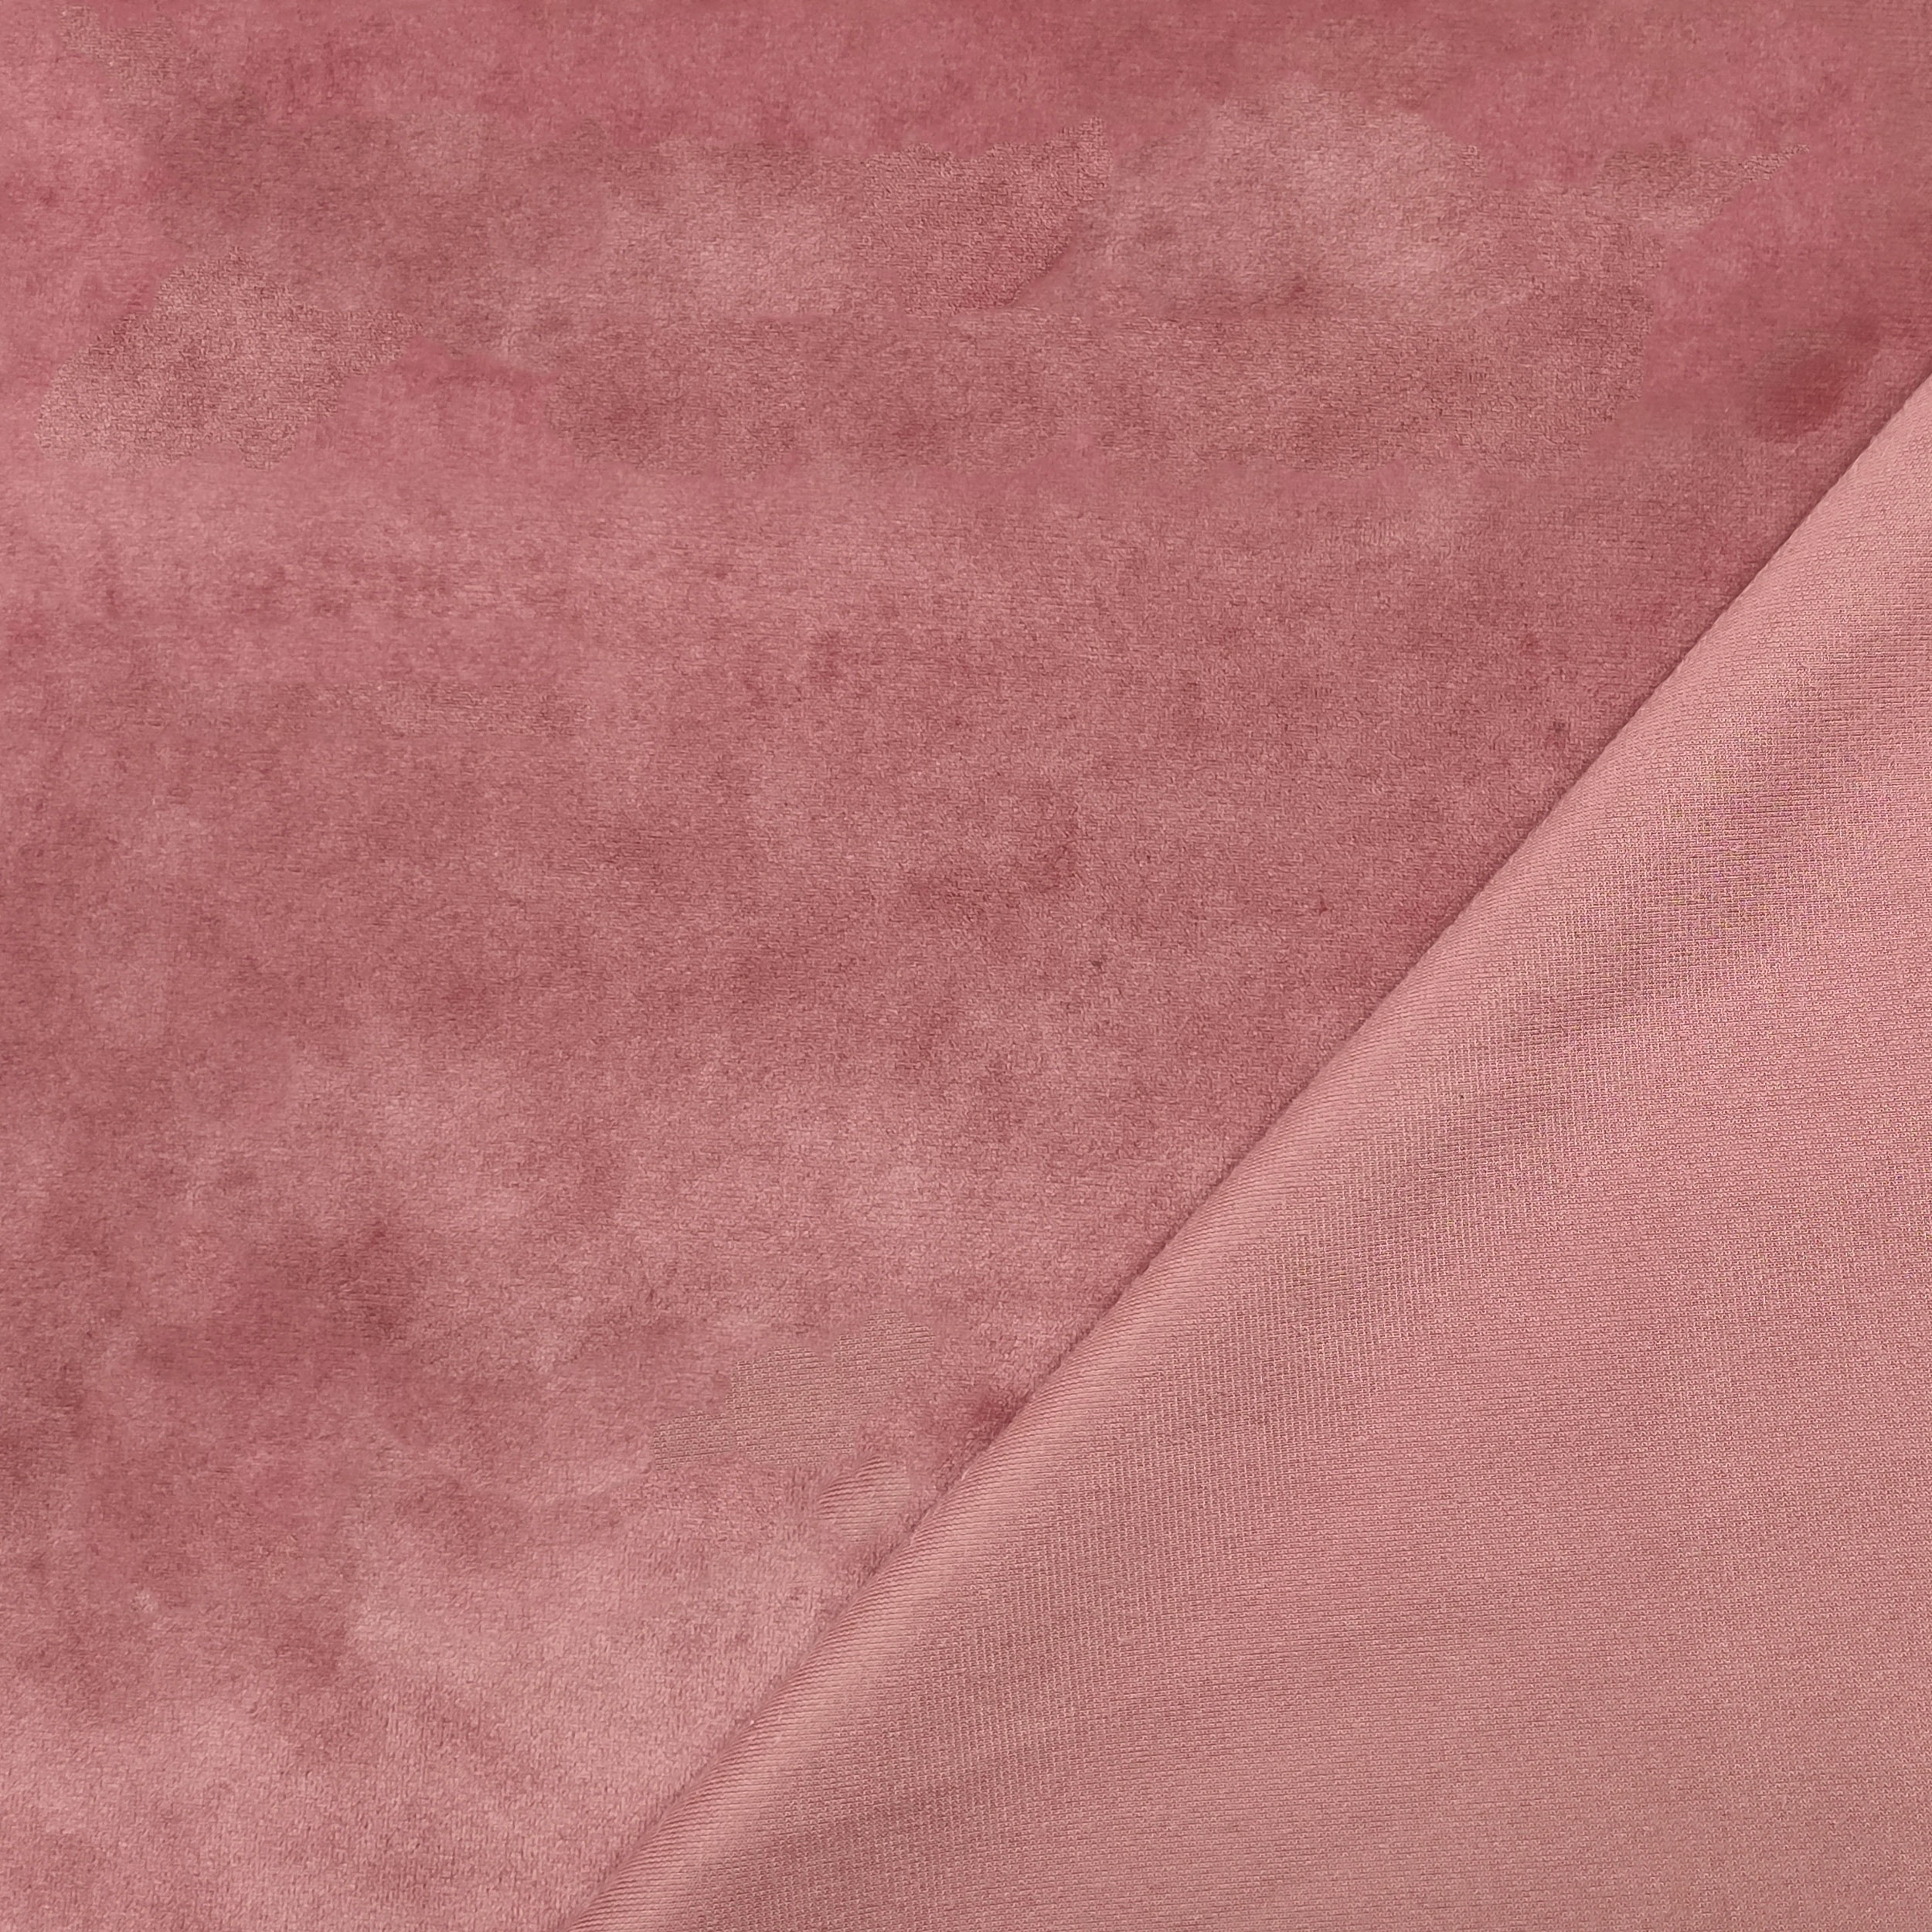 tessuto velluto in cotone rosa